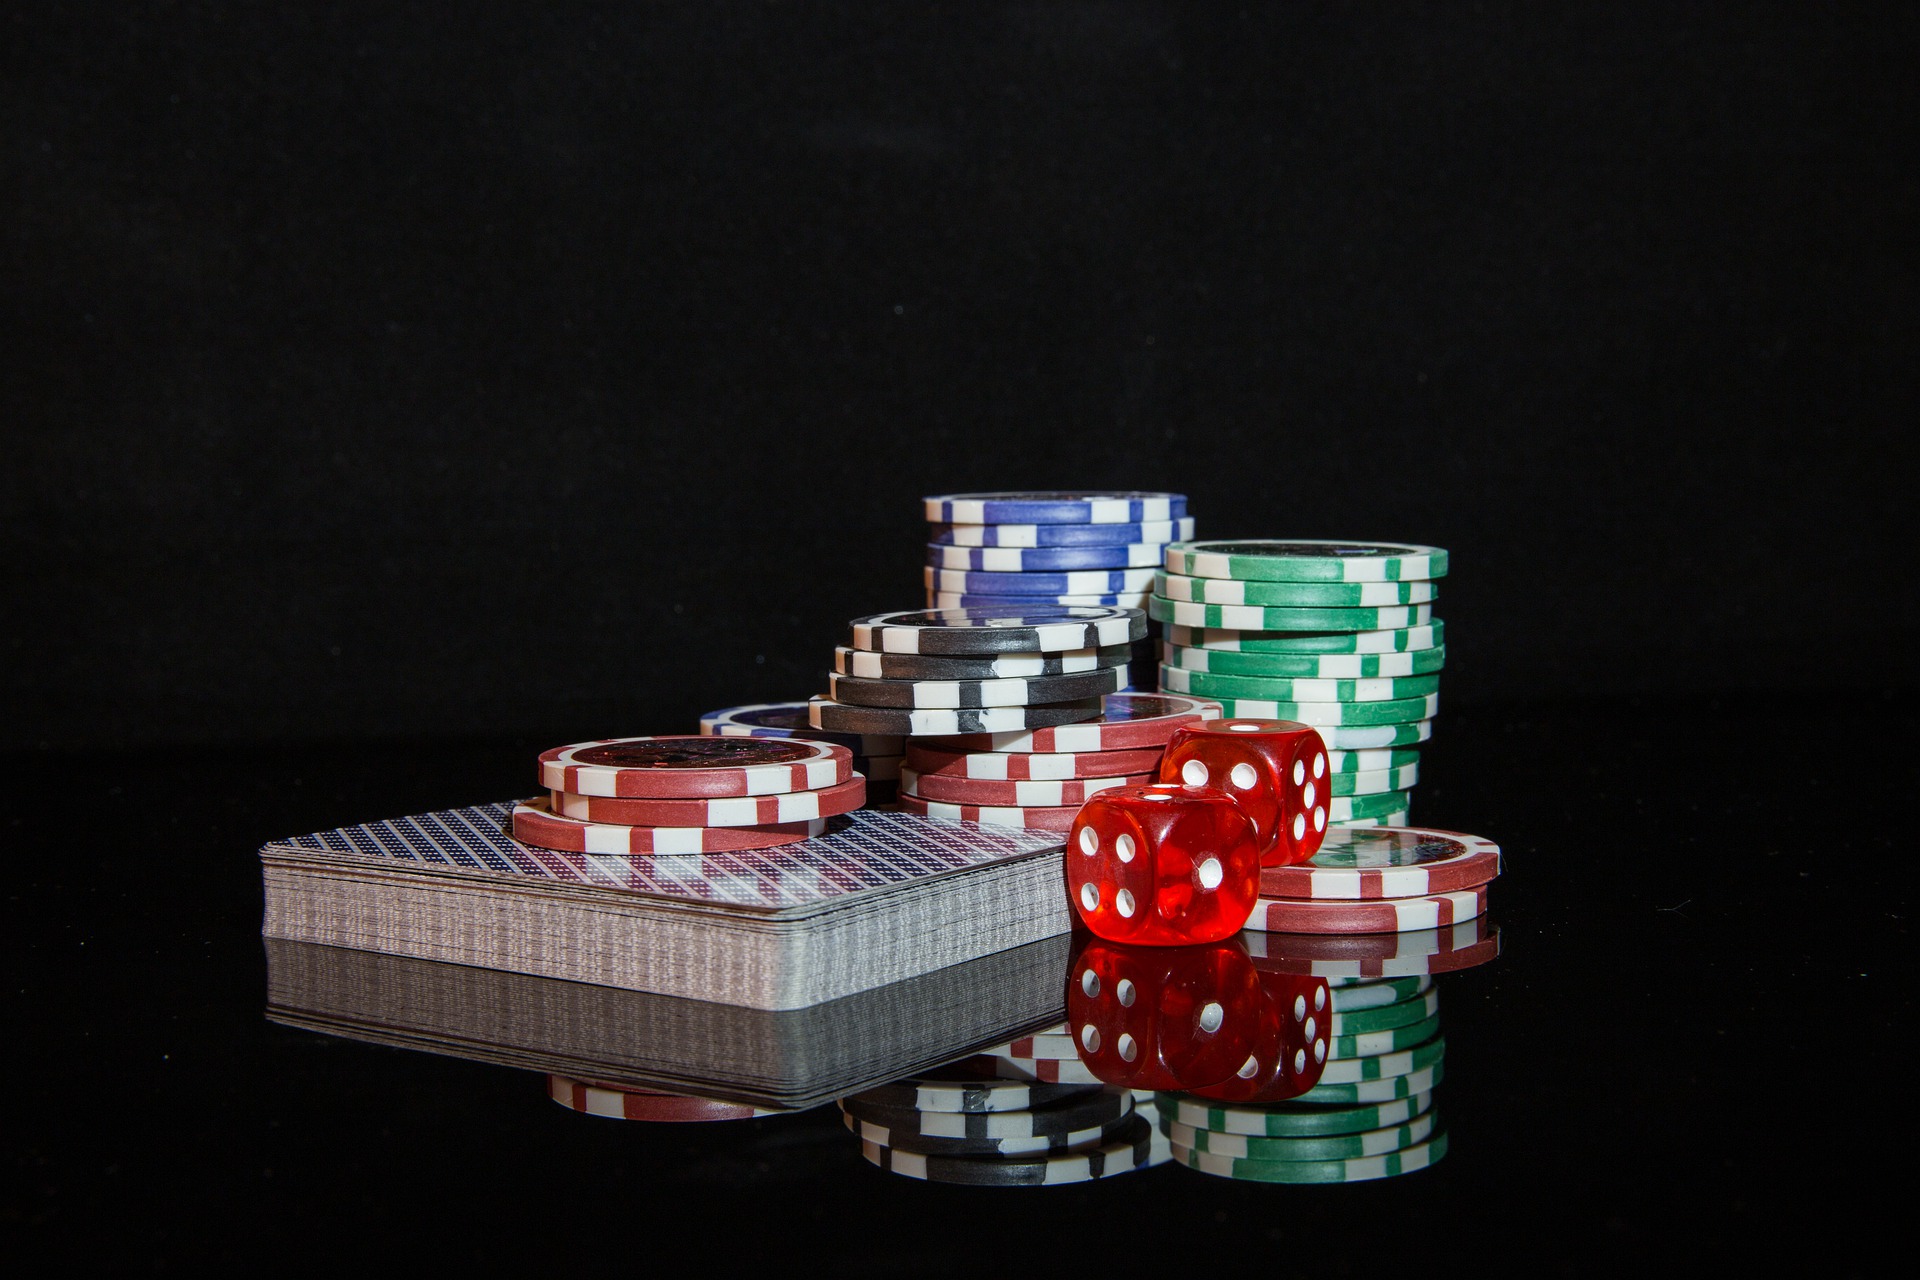 poker-chips-g0de7bacdc_1920.jpg